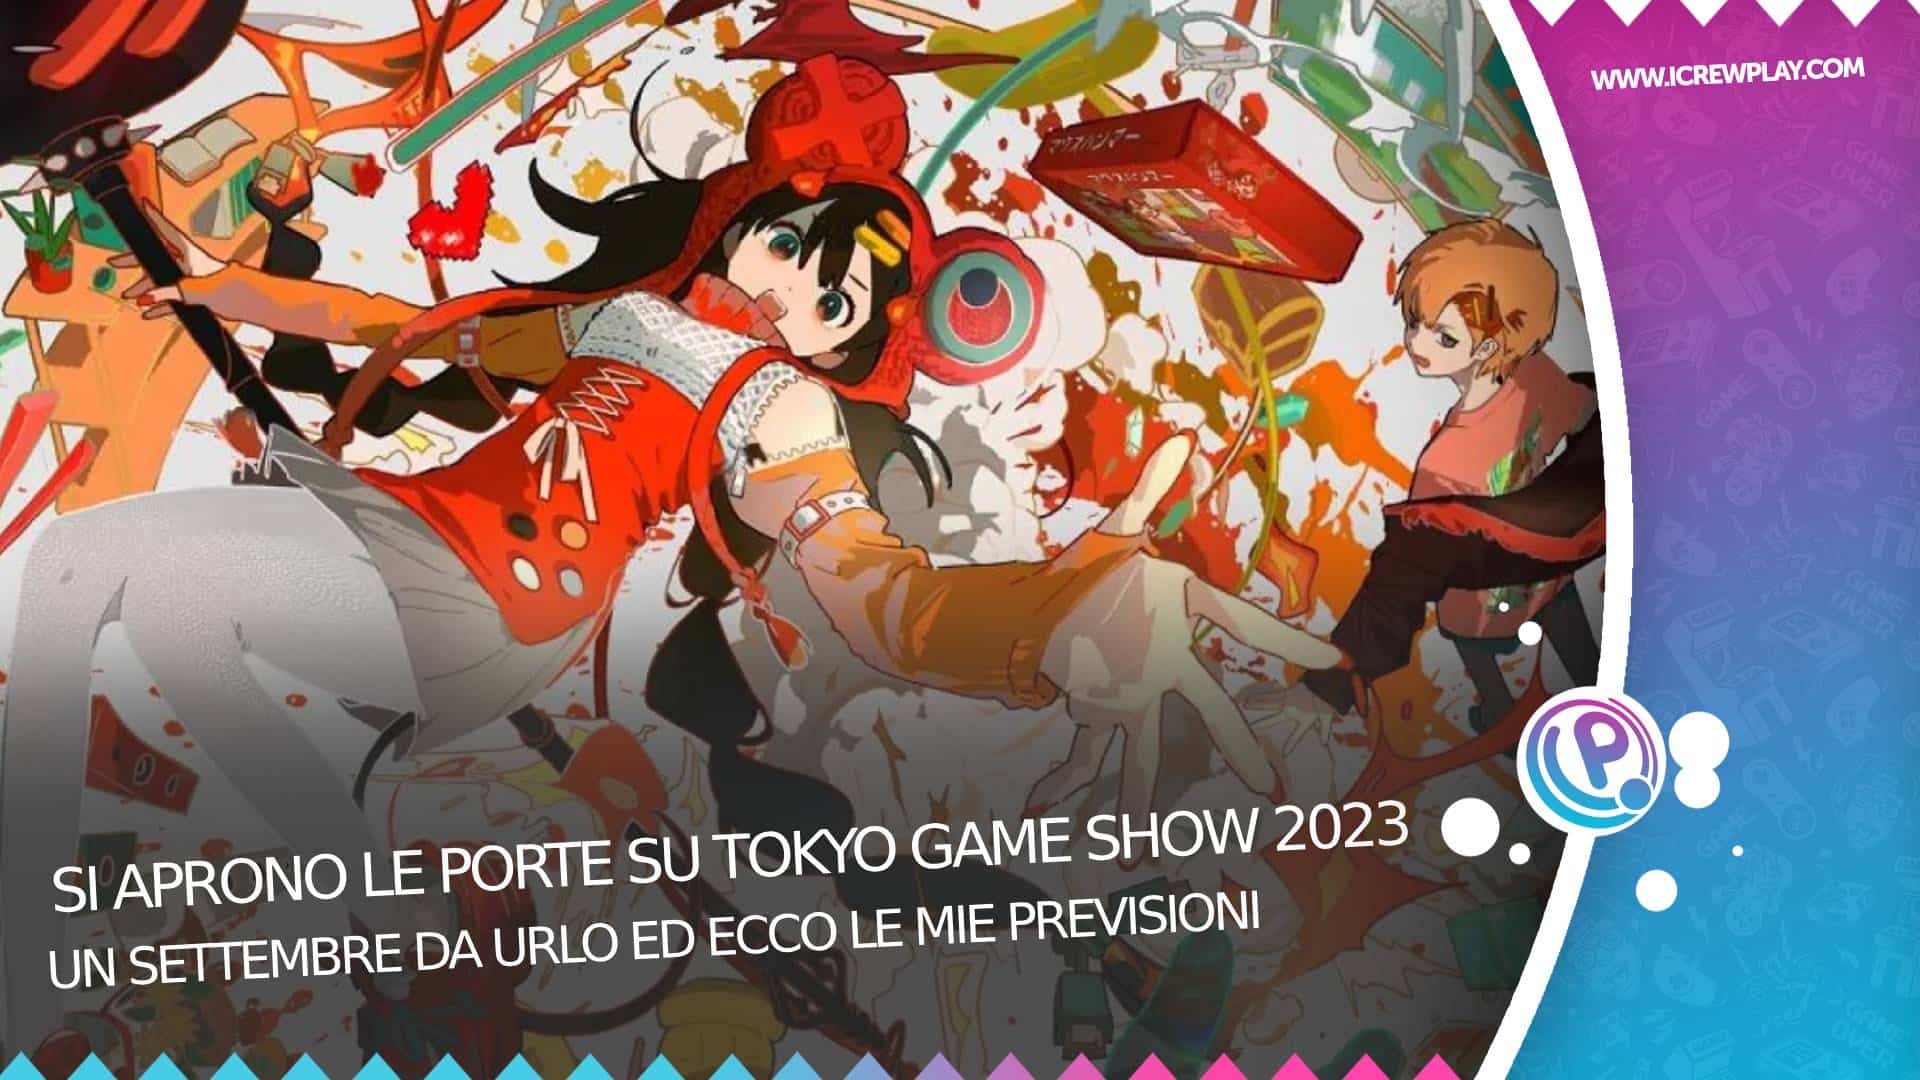 Si aprono le porte su Tokyo game show 2023 8